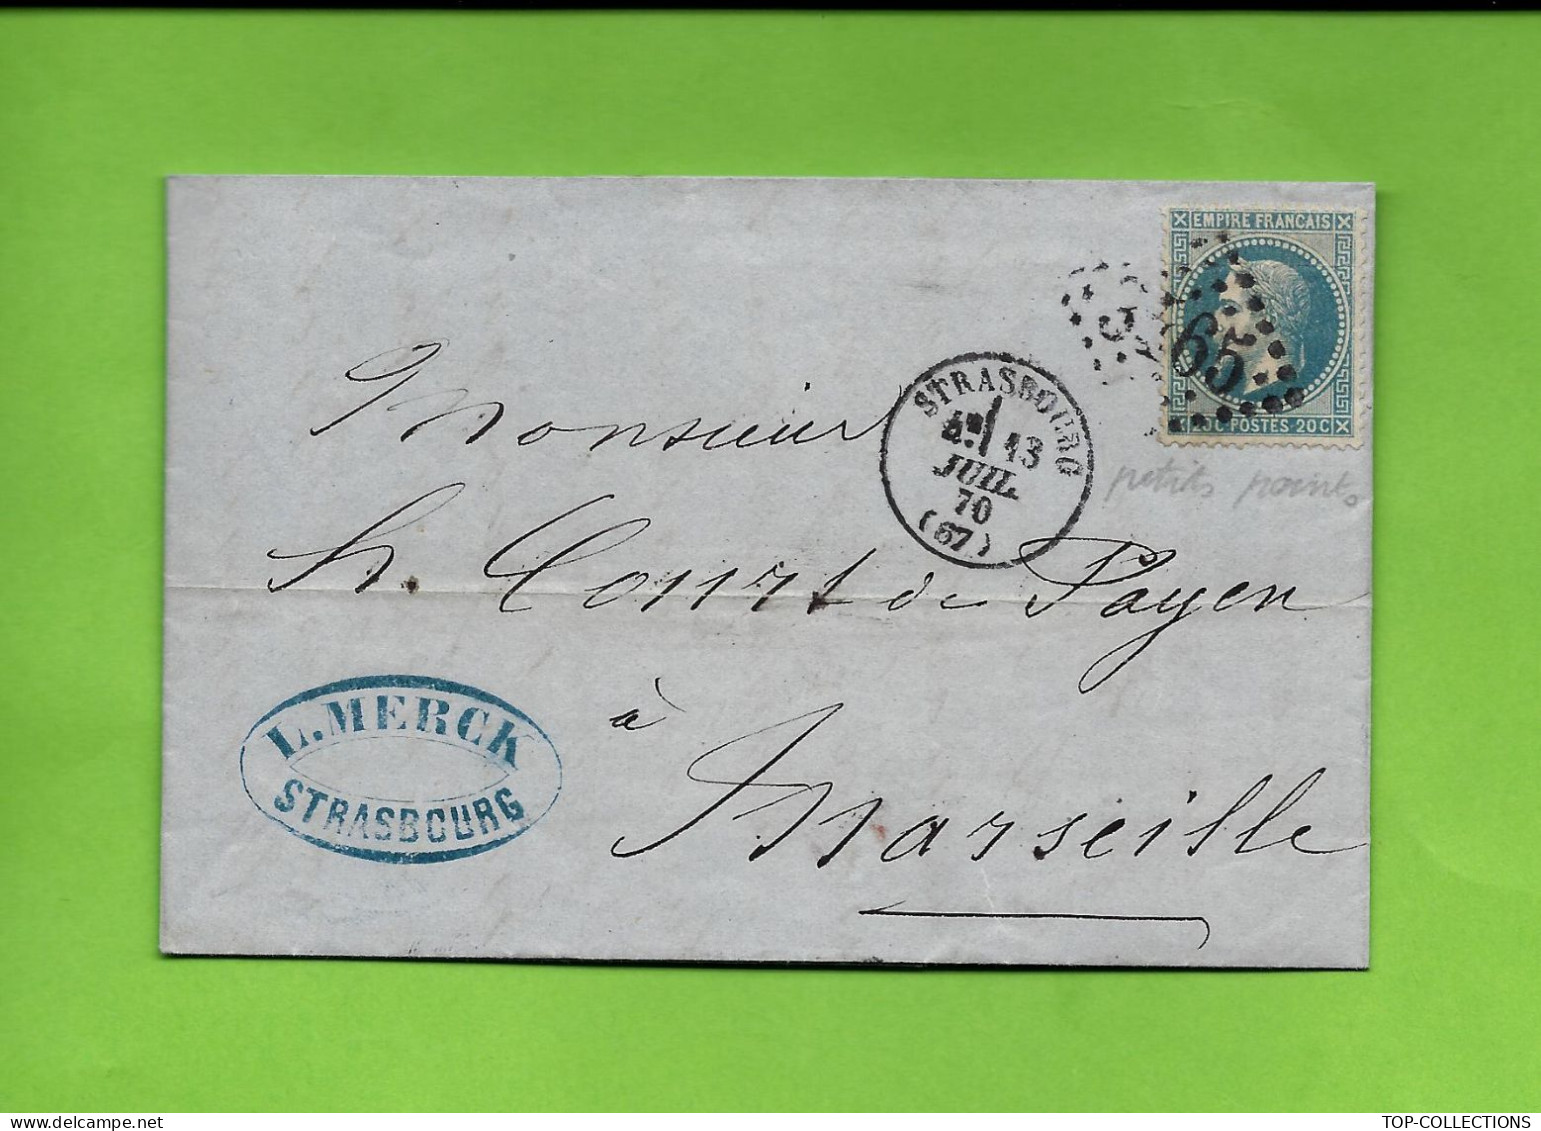 1870  Vins D’Espagne  L.MERCK  STRASBOURG  Bas Rhin  Timbre Empire Oblit. Gr.ch. 3465 Pour Court De Payen à Marseille - 1800 – 1899